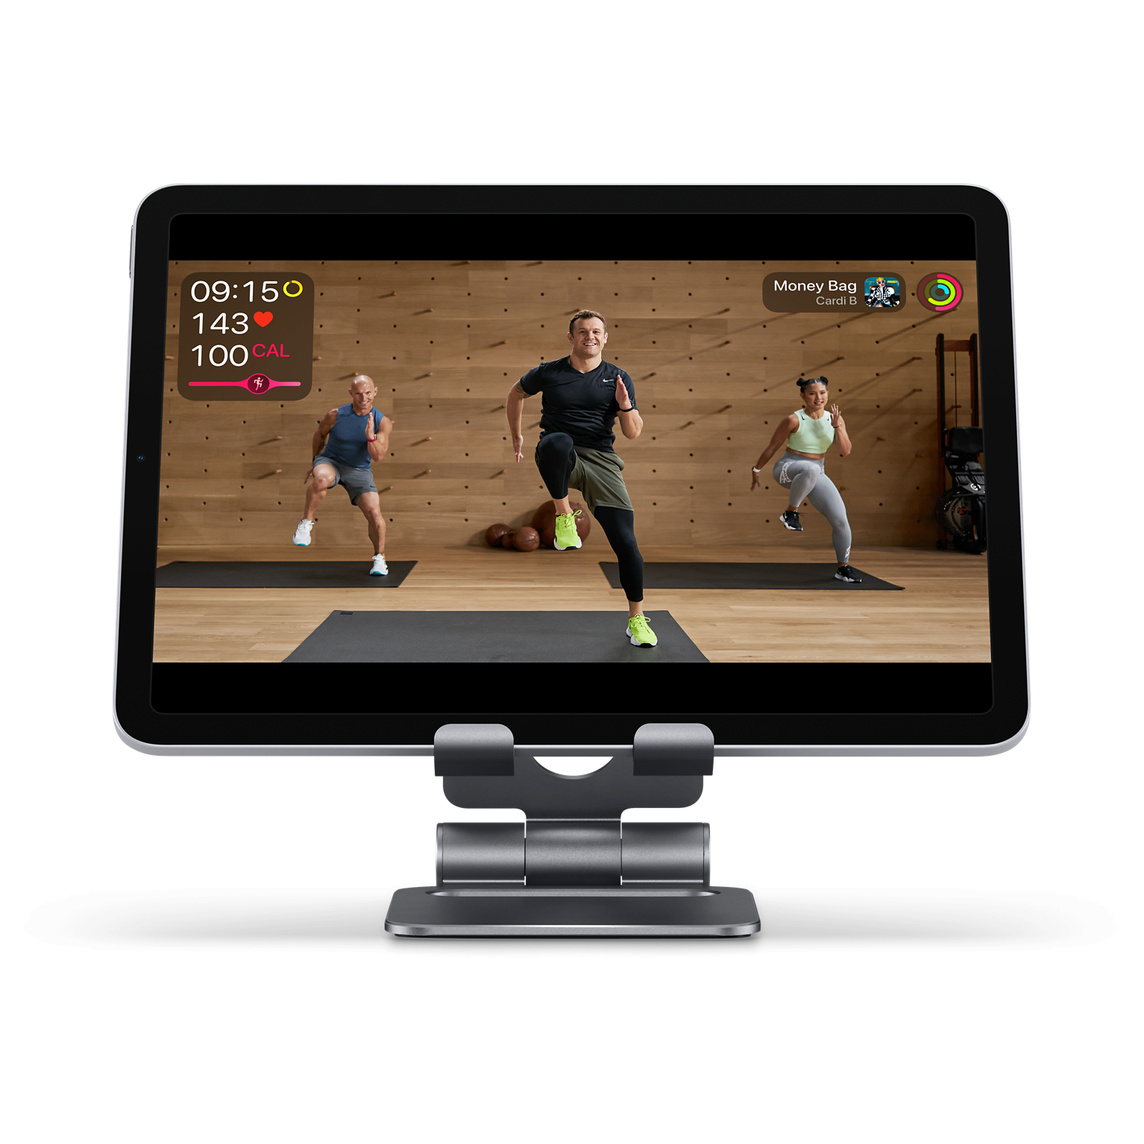 Kokoontaitettava Satechi-alumiiniteline pitää iPhonen tai iPadin paikallaan niin, että sitä on kätevä käyttää treenivideoiden katselemiseen tai FaceTime-puheluja varten.